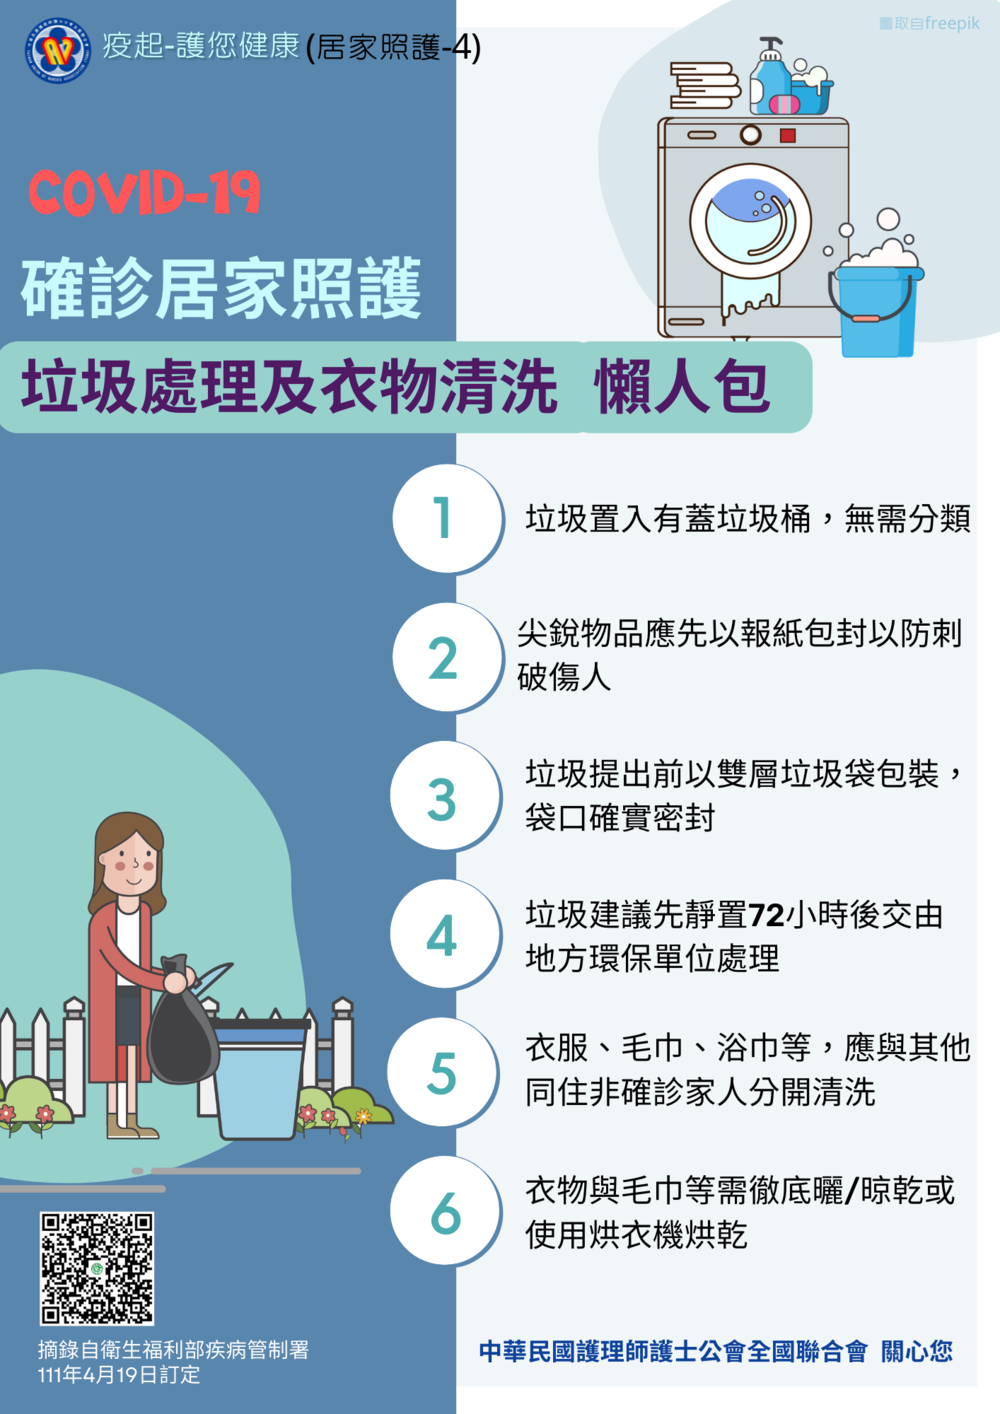 居家照護垃圾處理及衣物清洗注意事項(中華民國護理師護士公會全國聯合會提供)